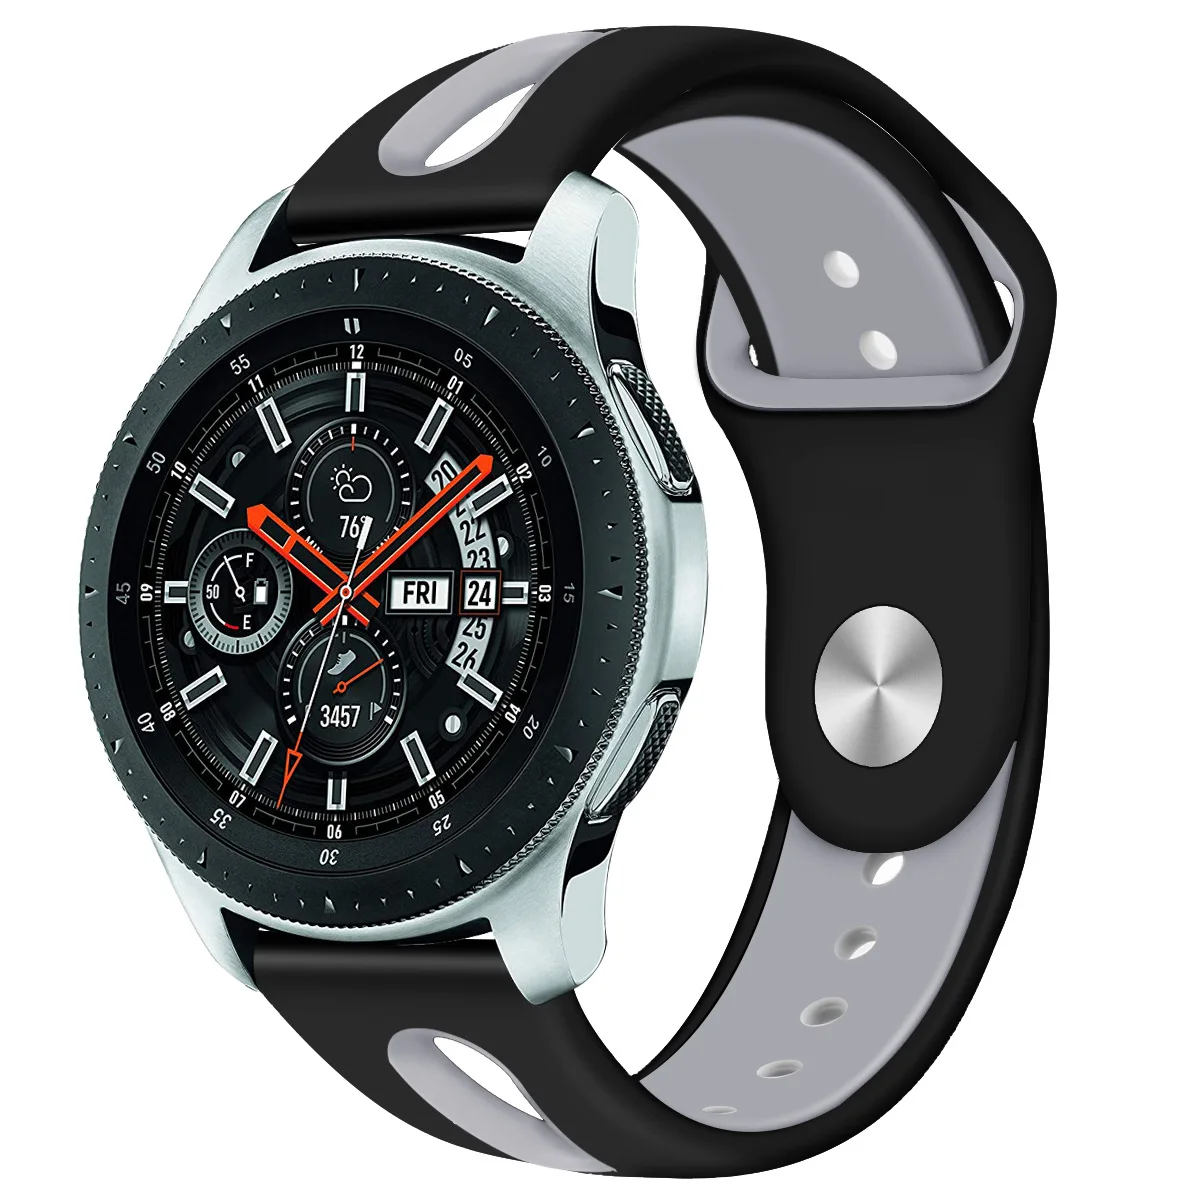 Samsung Galaxy watch SM-r800 46mm. Galaxy watch SM-r800. Galaxy watch 46mm SM-r800. Samsung galaxy watch r800